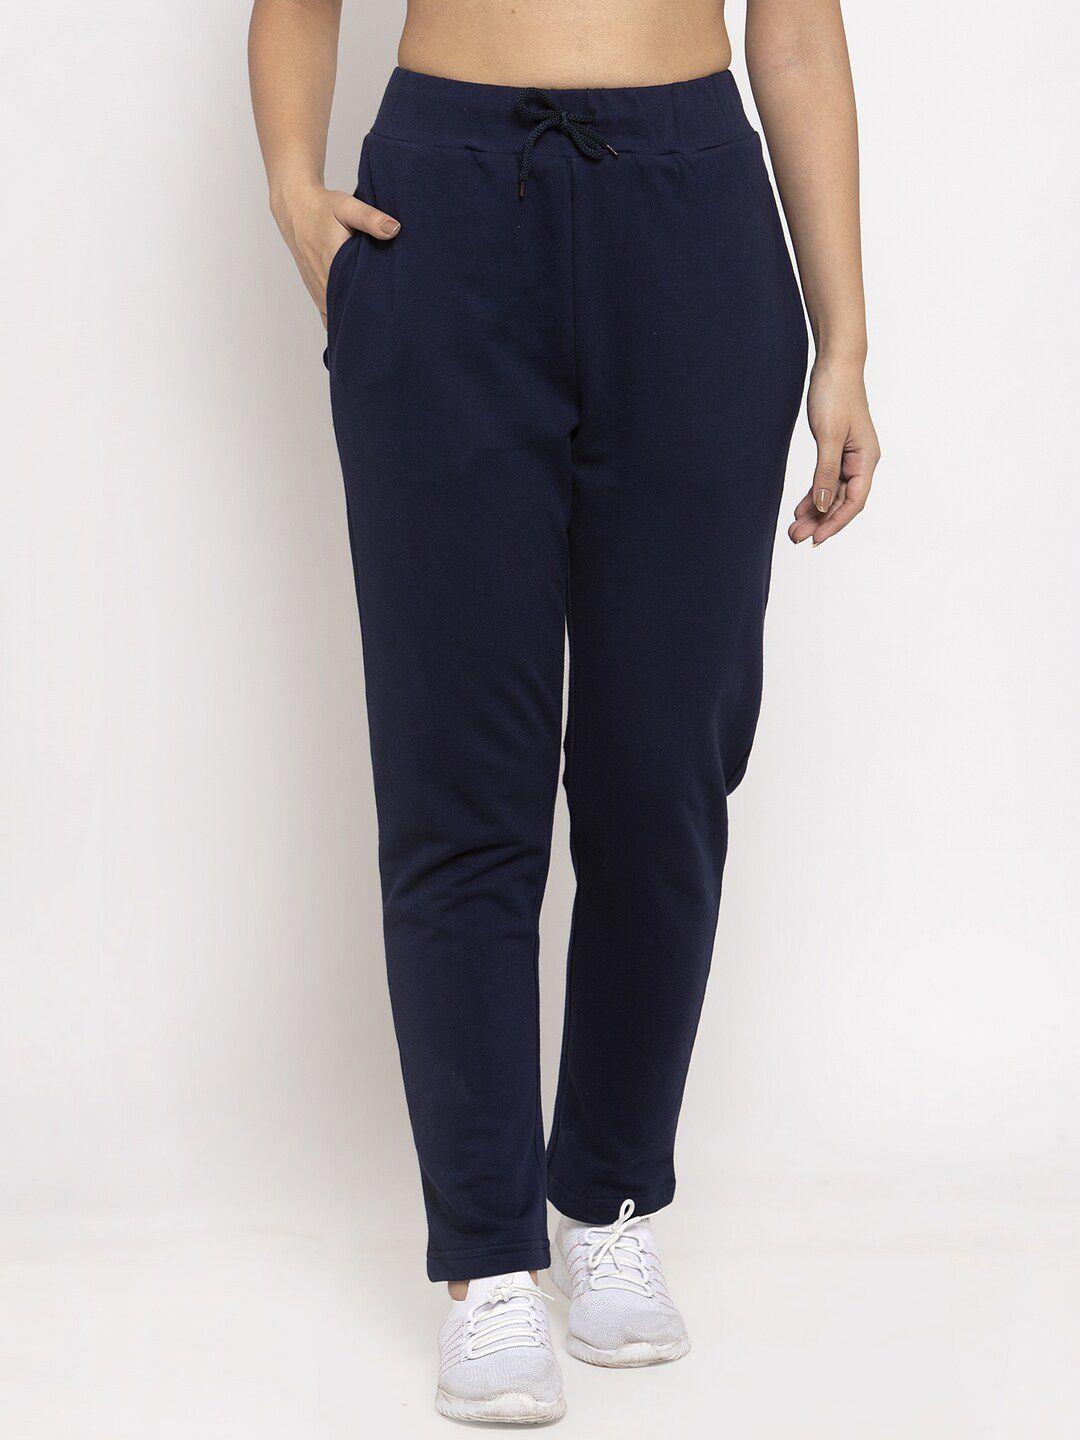 door74-women-navy-blue-solid-straight-fit-trackpants